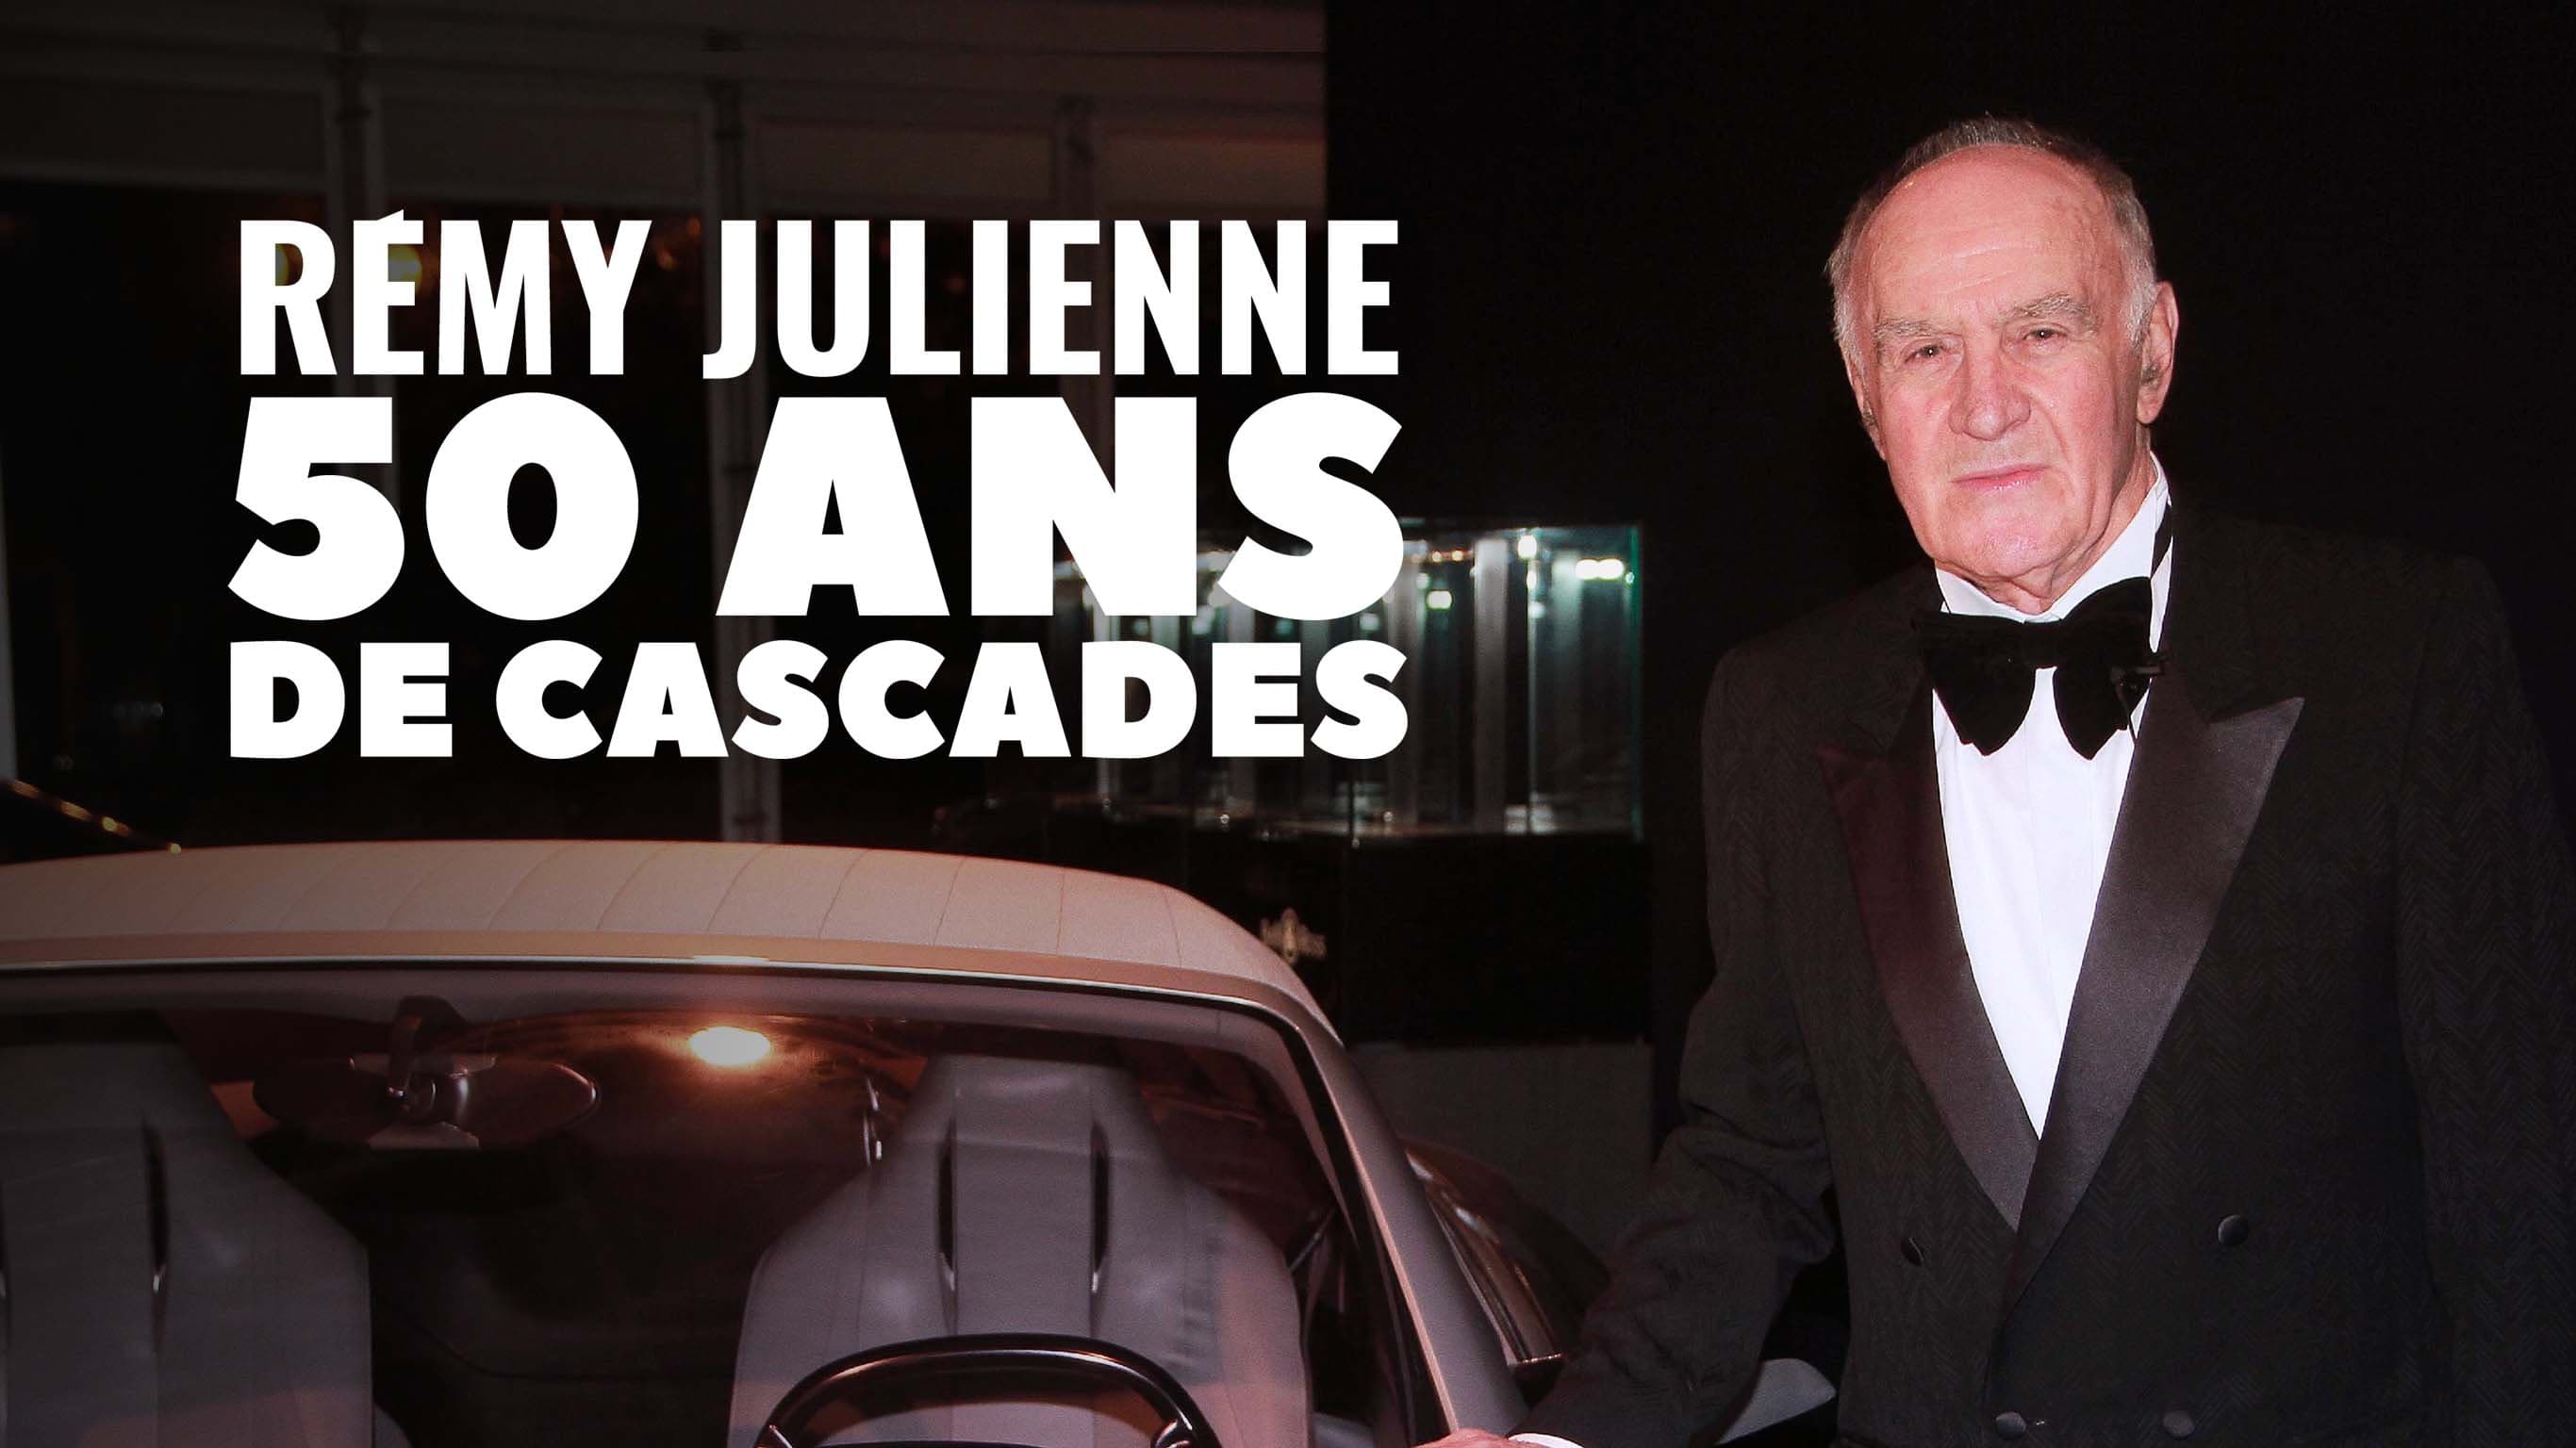 Remy Julienne 50 ans de cascades